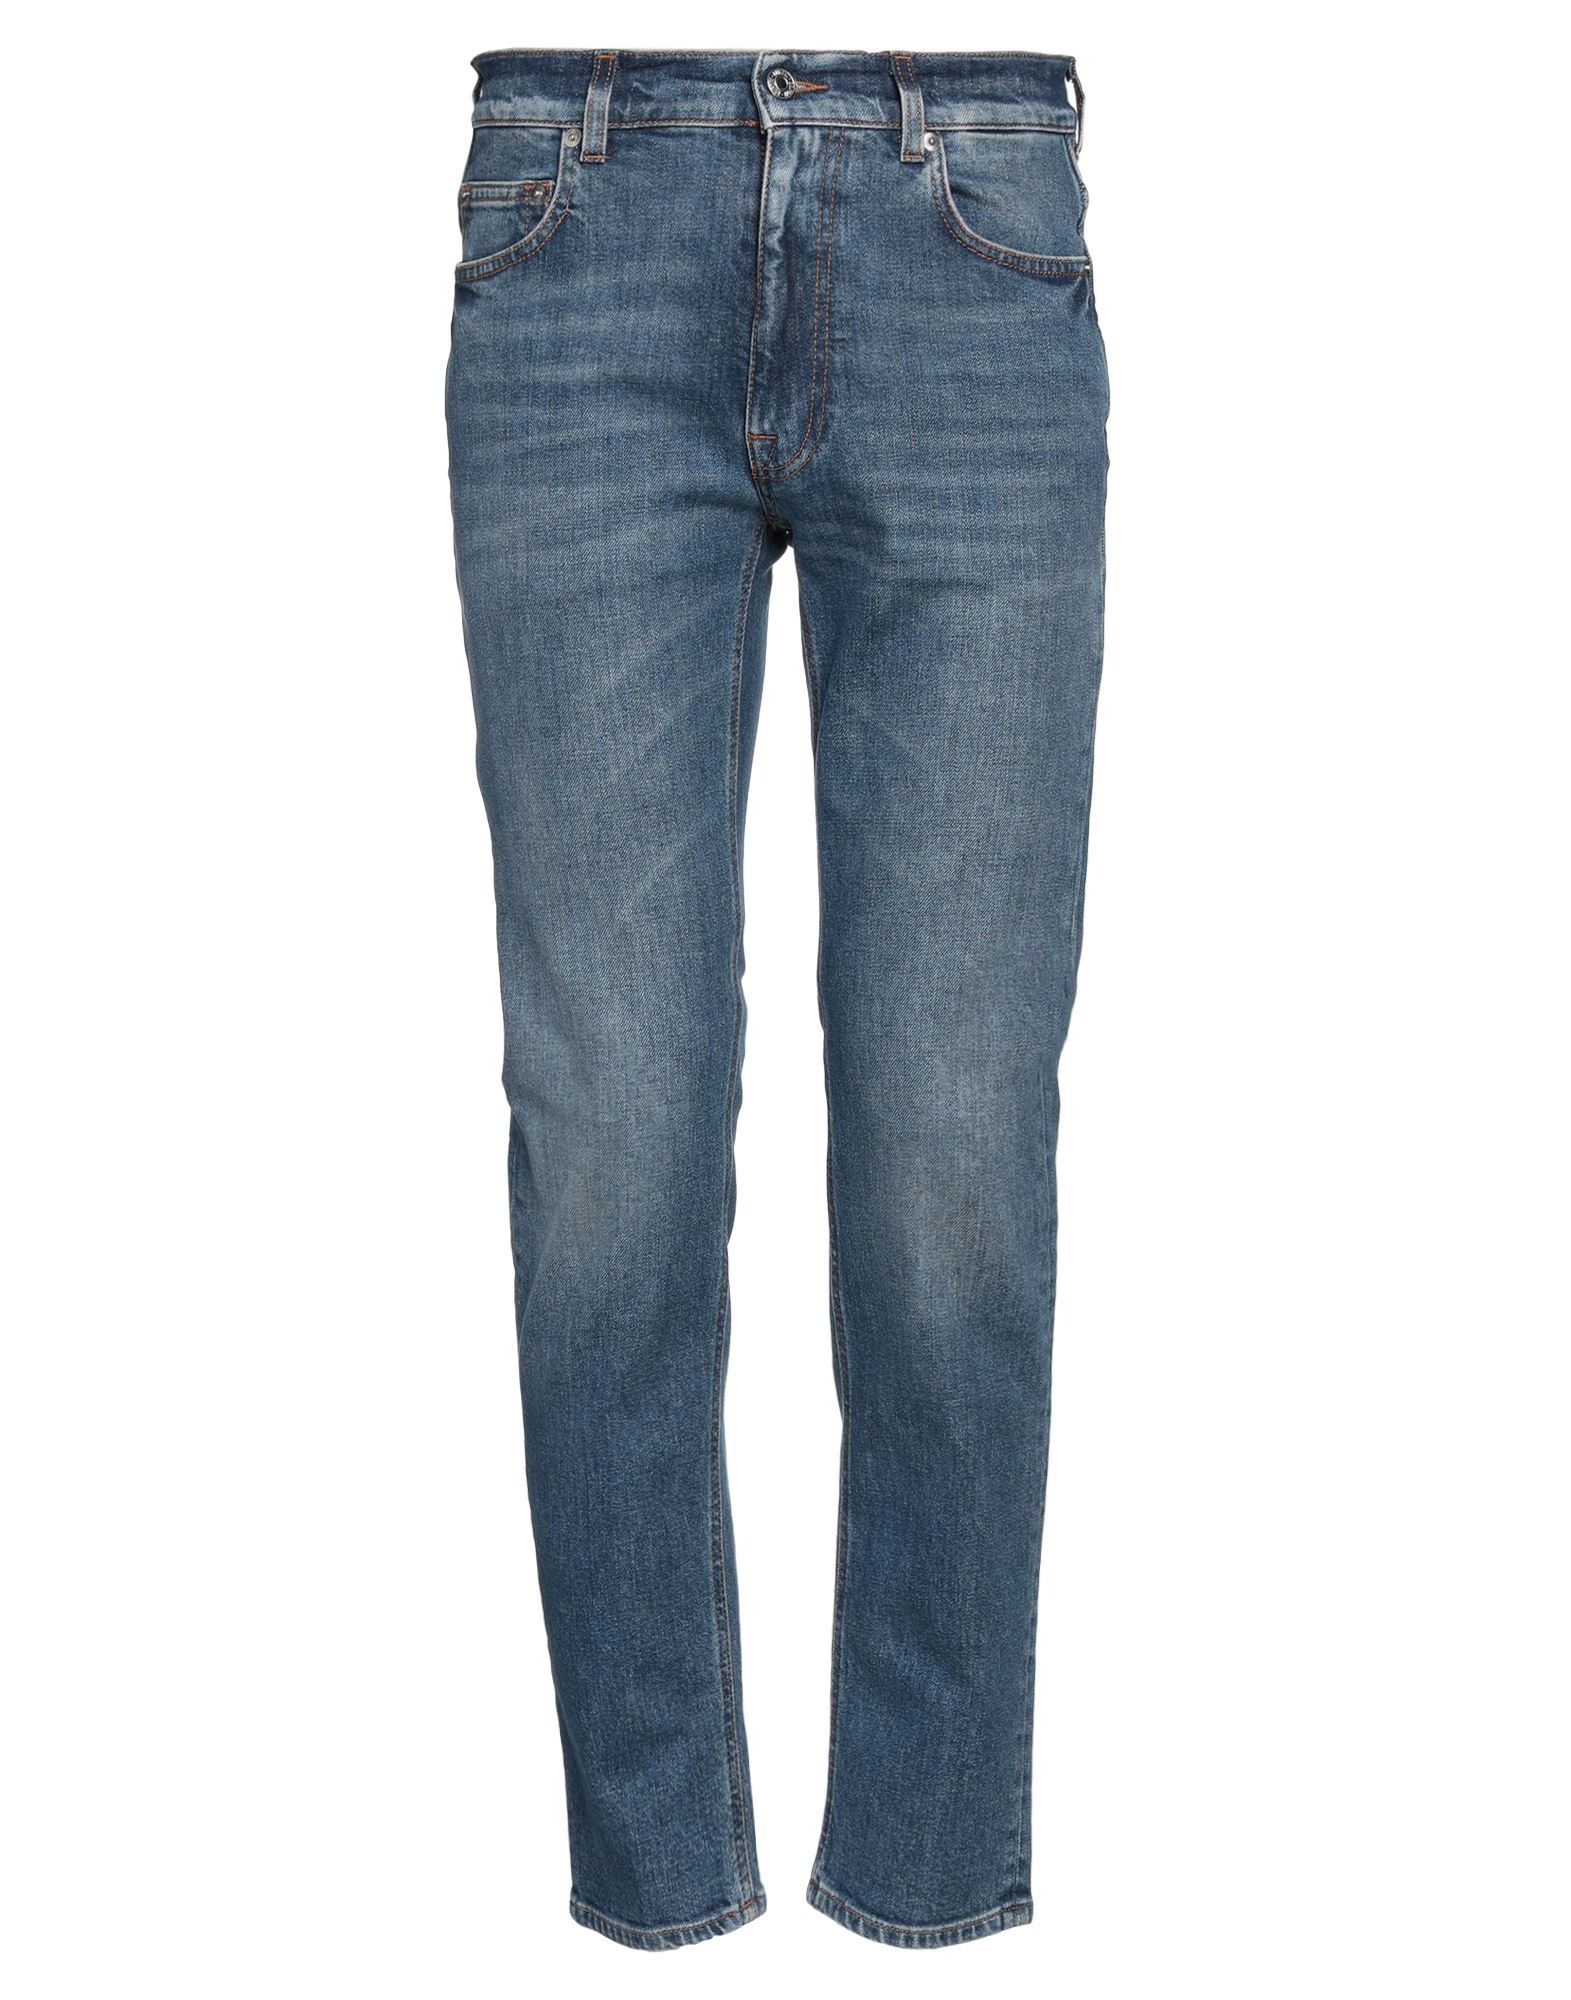 Shop Mauro Grifoni Grifoni Man Jeans Blue Size 34 Cotton, Elastane